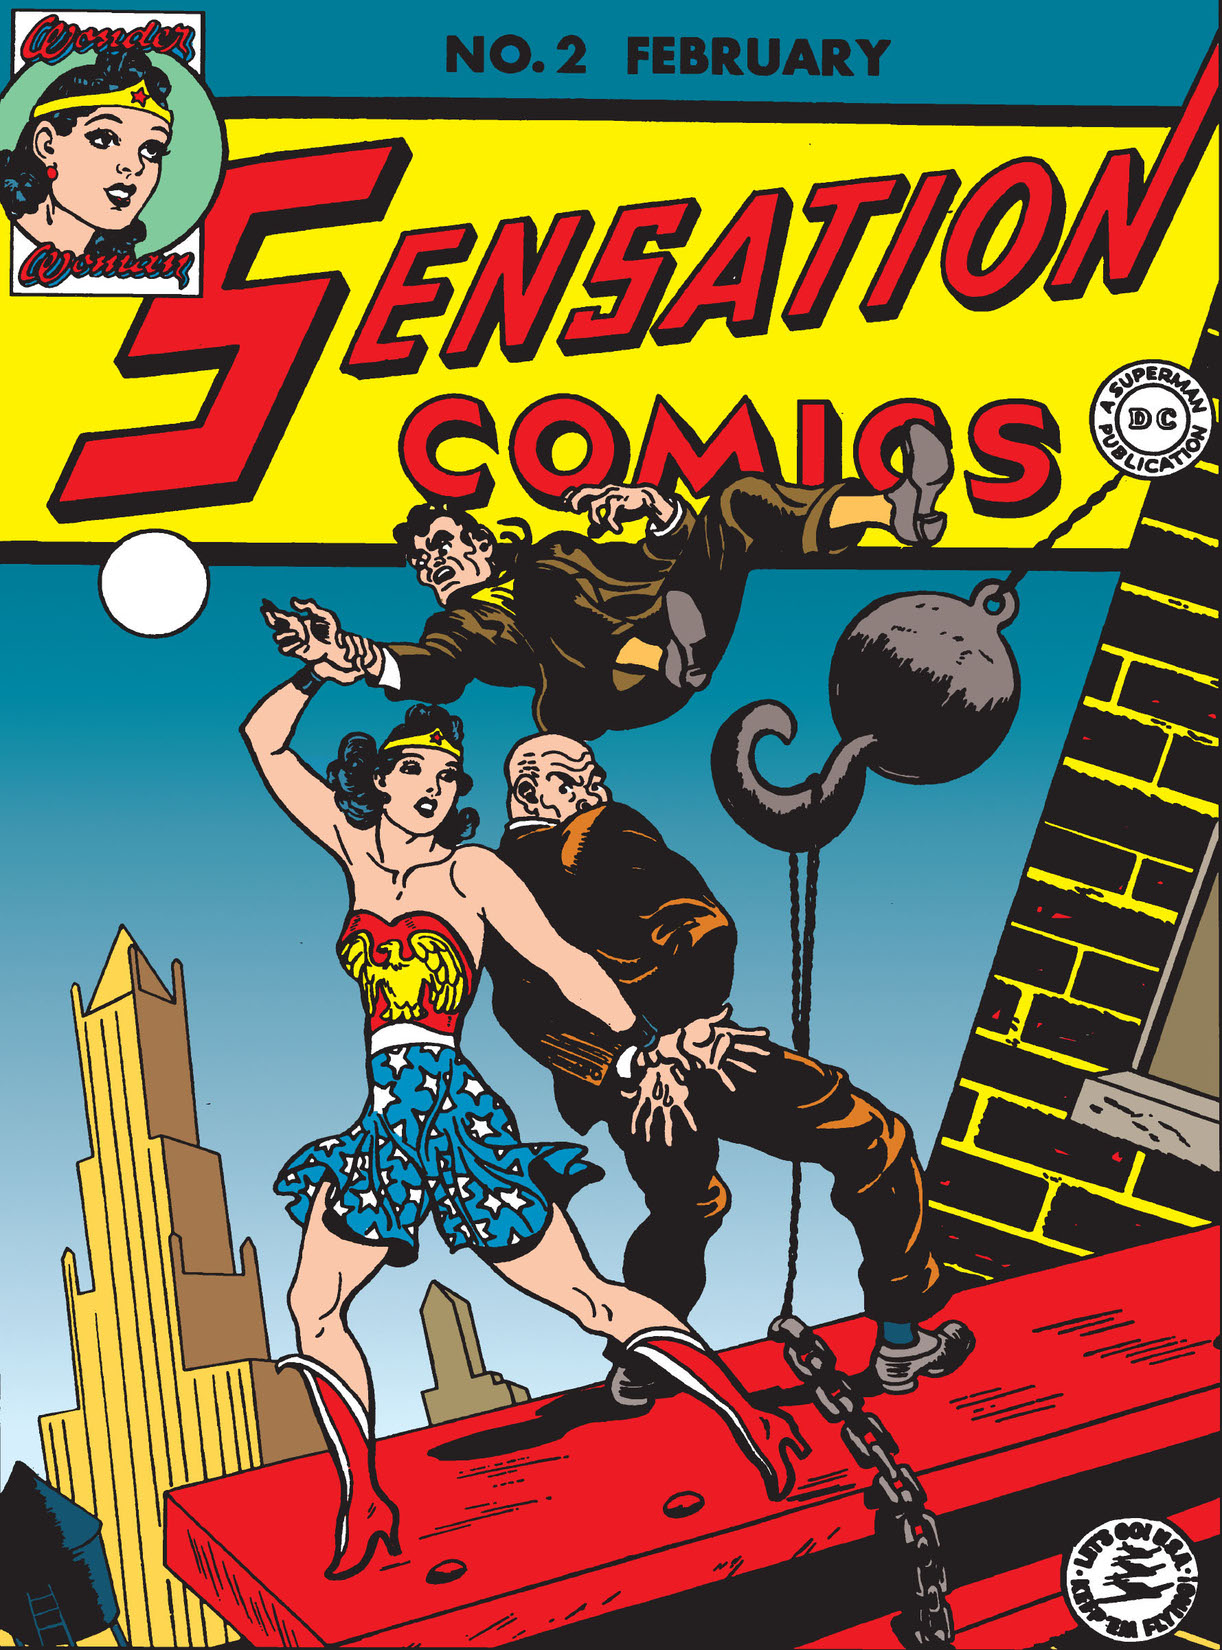 Sensation Comics #2-3 preview images